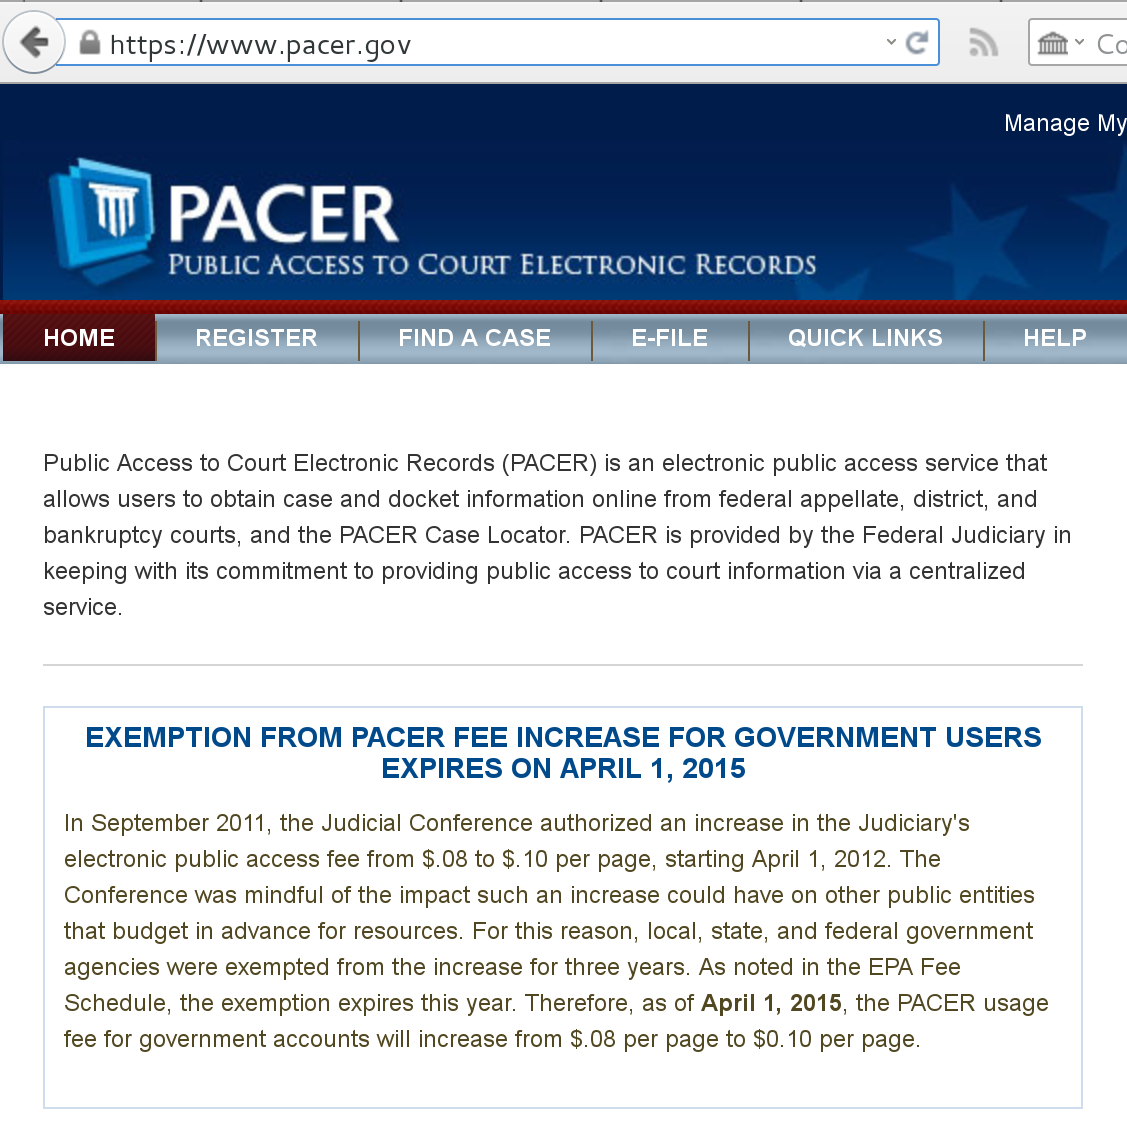 pacer.gov website